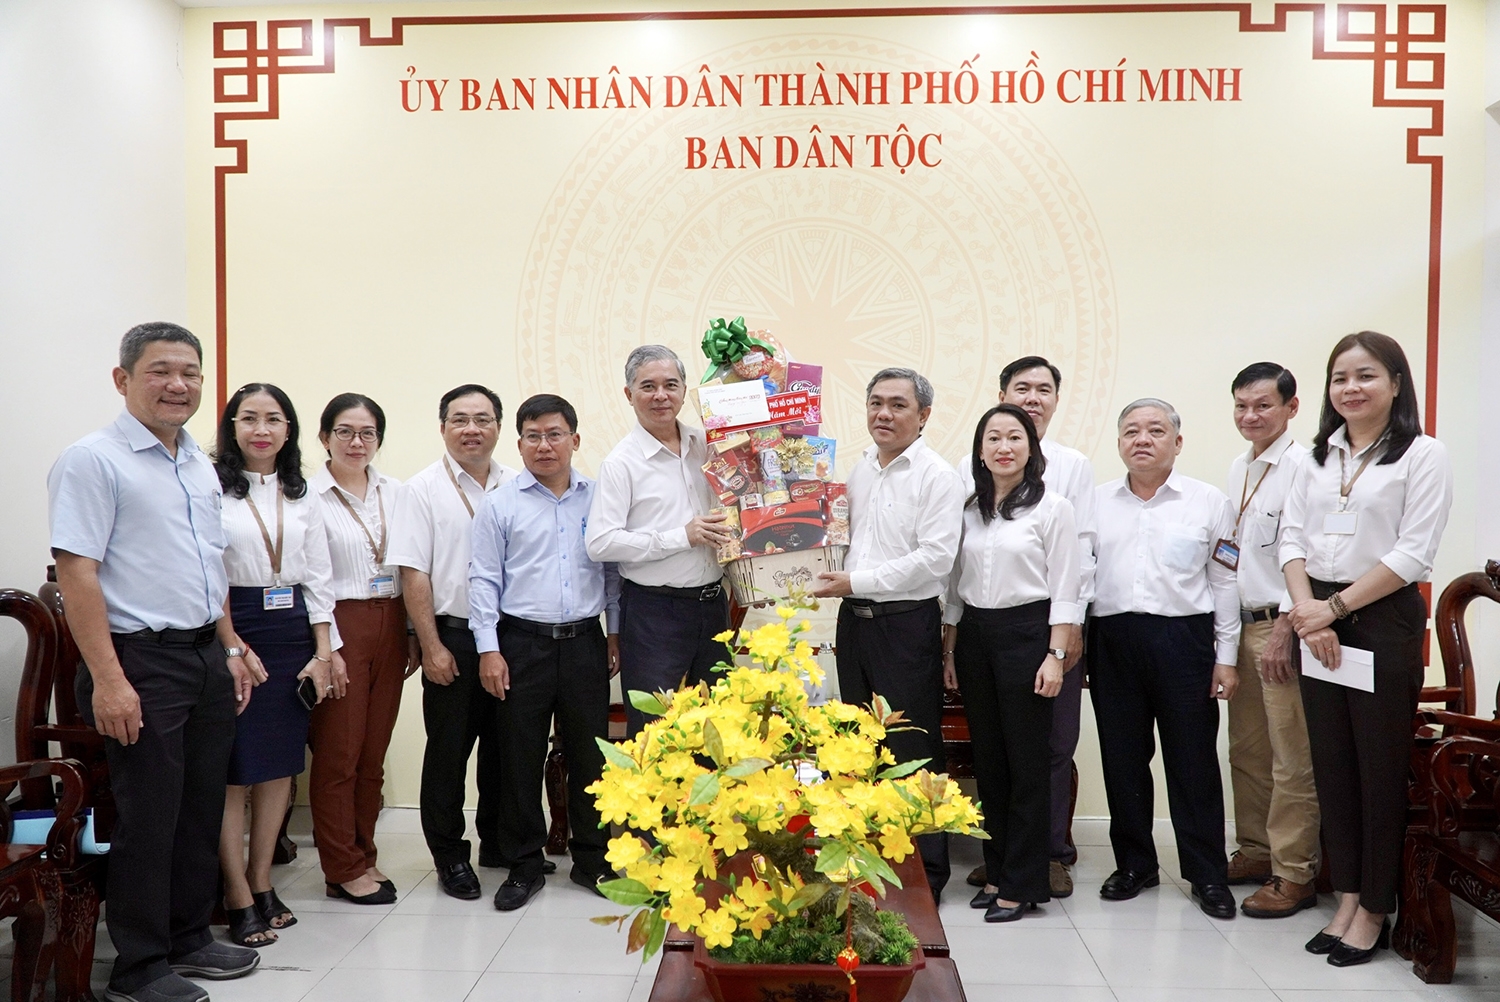 Ông Ngô Minh Châu - Phó Chủ tịch UBND TP. Hồ Chí Minh tham dự và tặng quà mừng Xuân cho Ban Dân tộc Thành phố